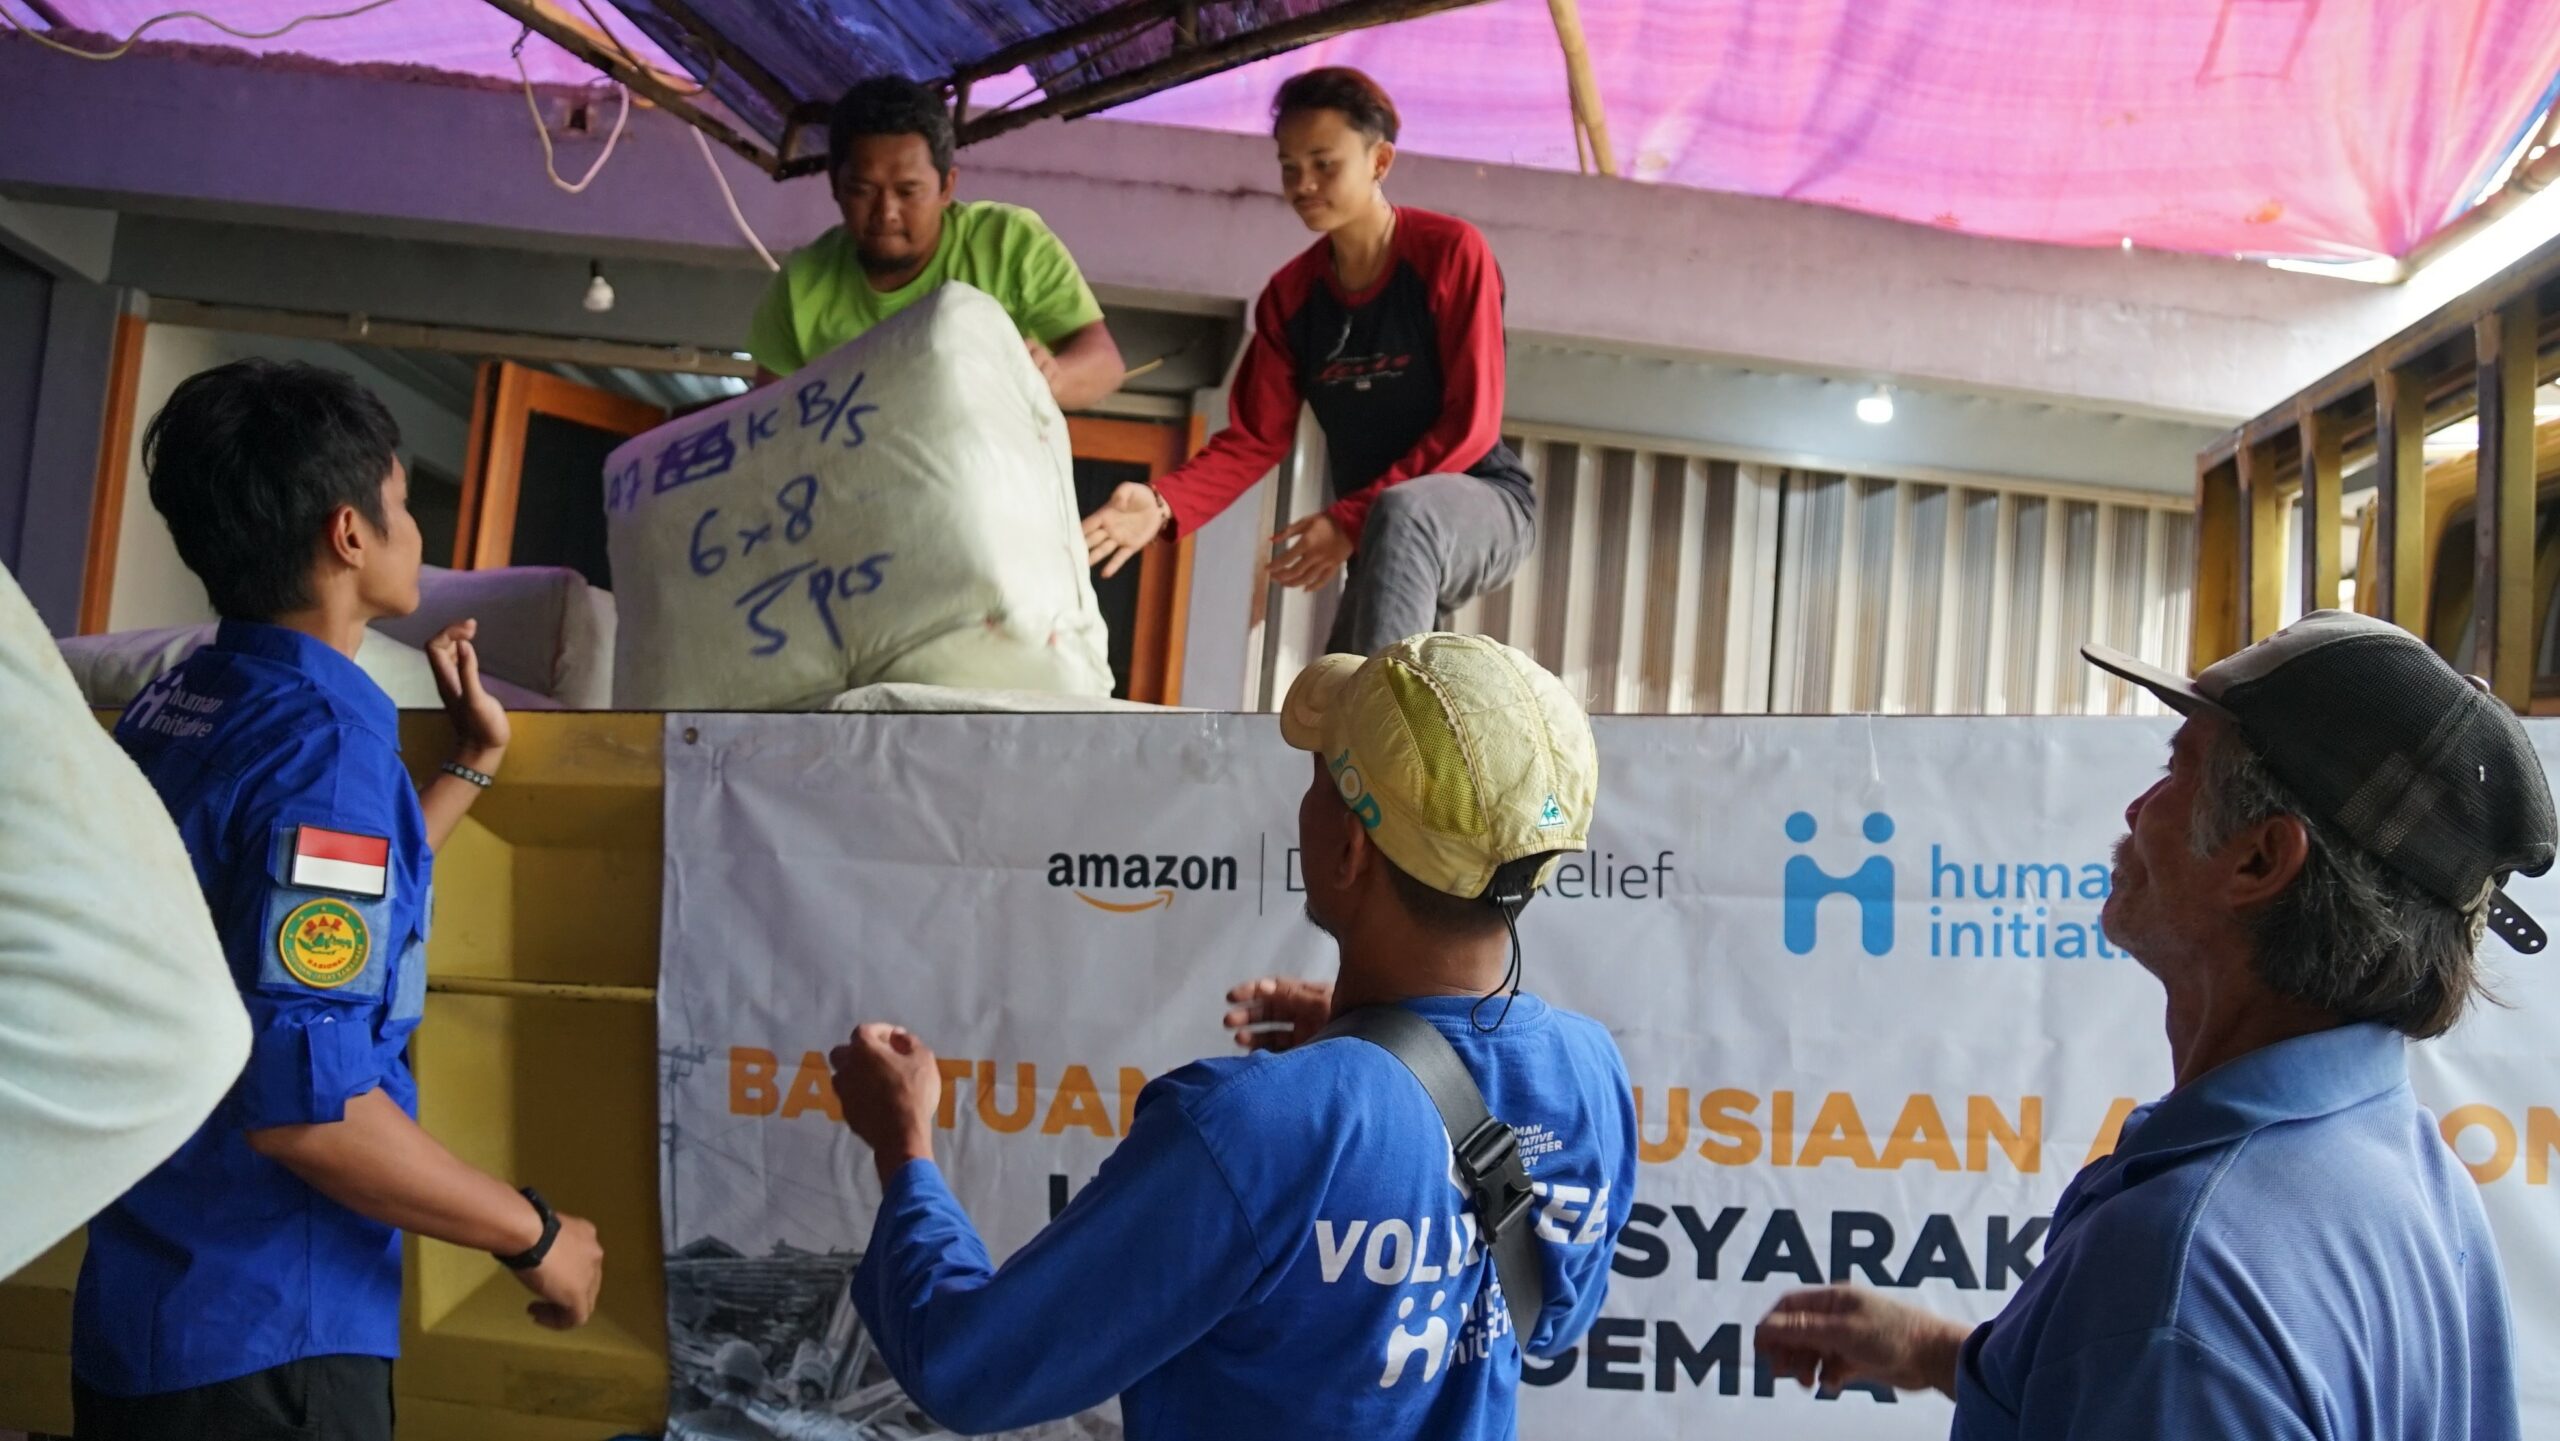 AWS Indonesia Bersama Human Initiative, Kolaborasi Wujudkan Harapan Para Penyintas Gempa Cianjur